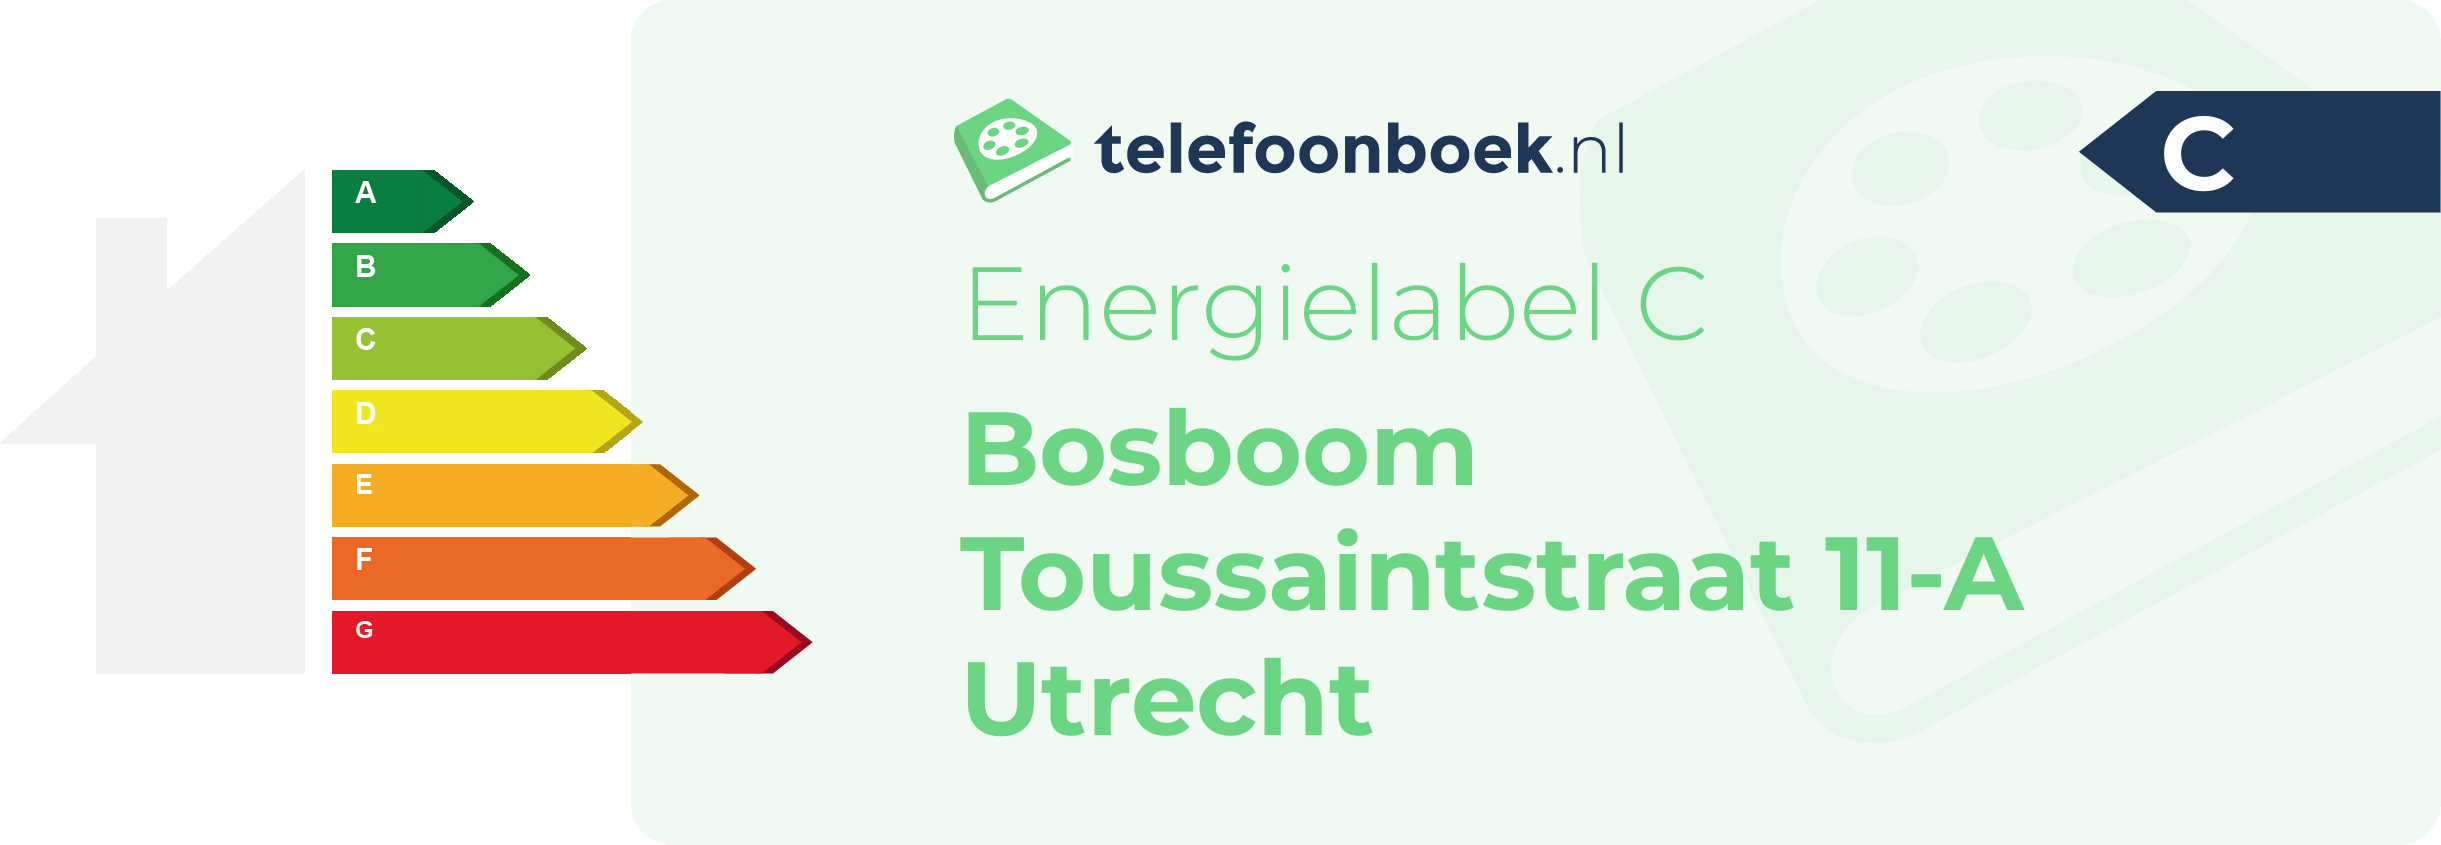 Energielabel Bosboom Toussaintstraat 11-A Utrecht